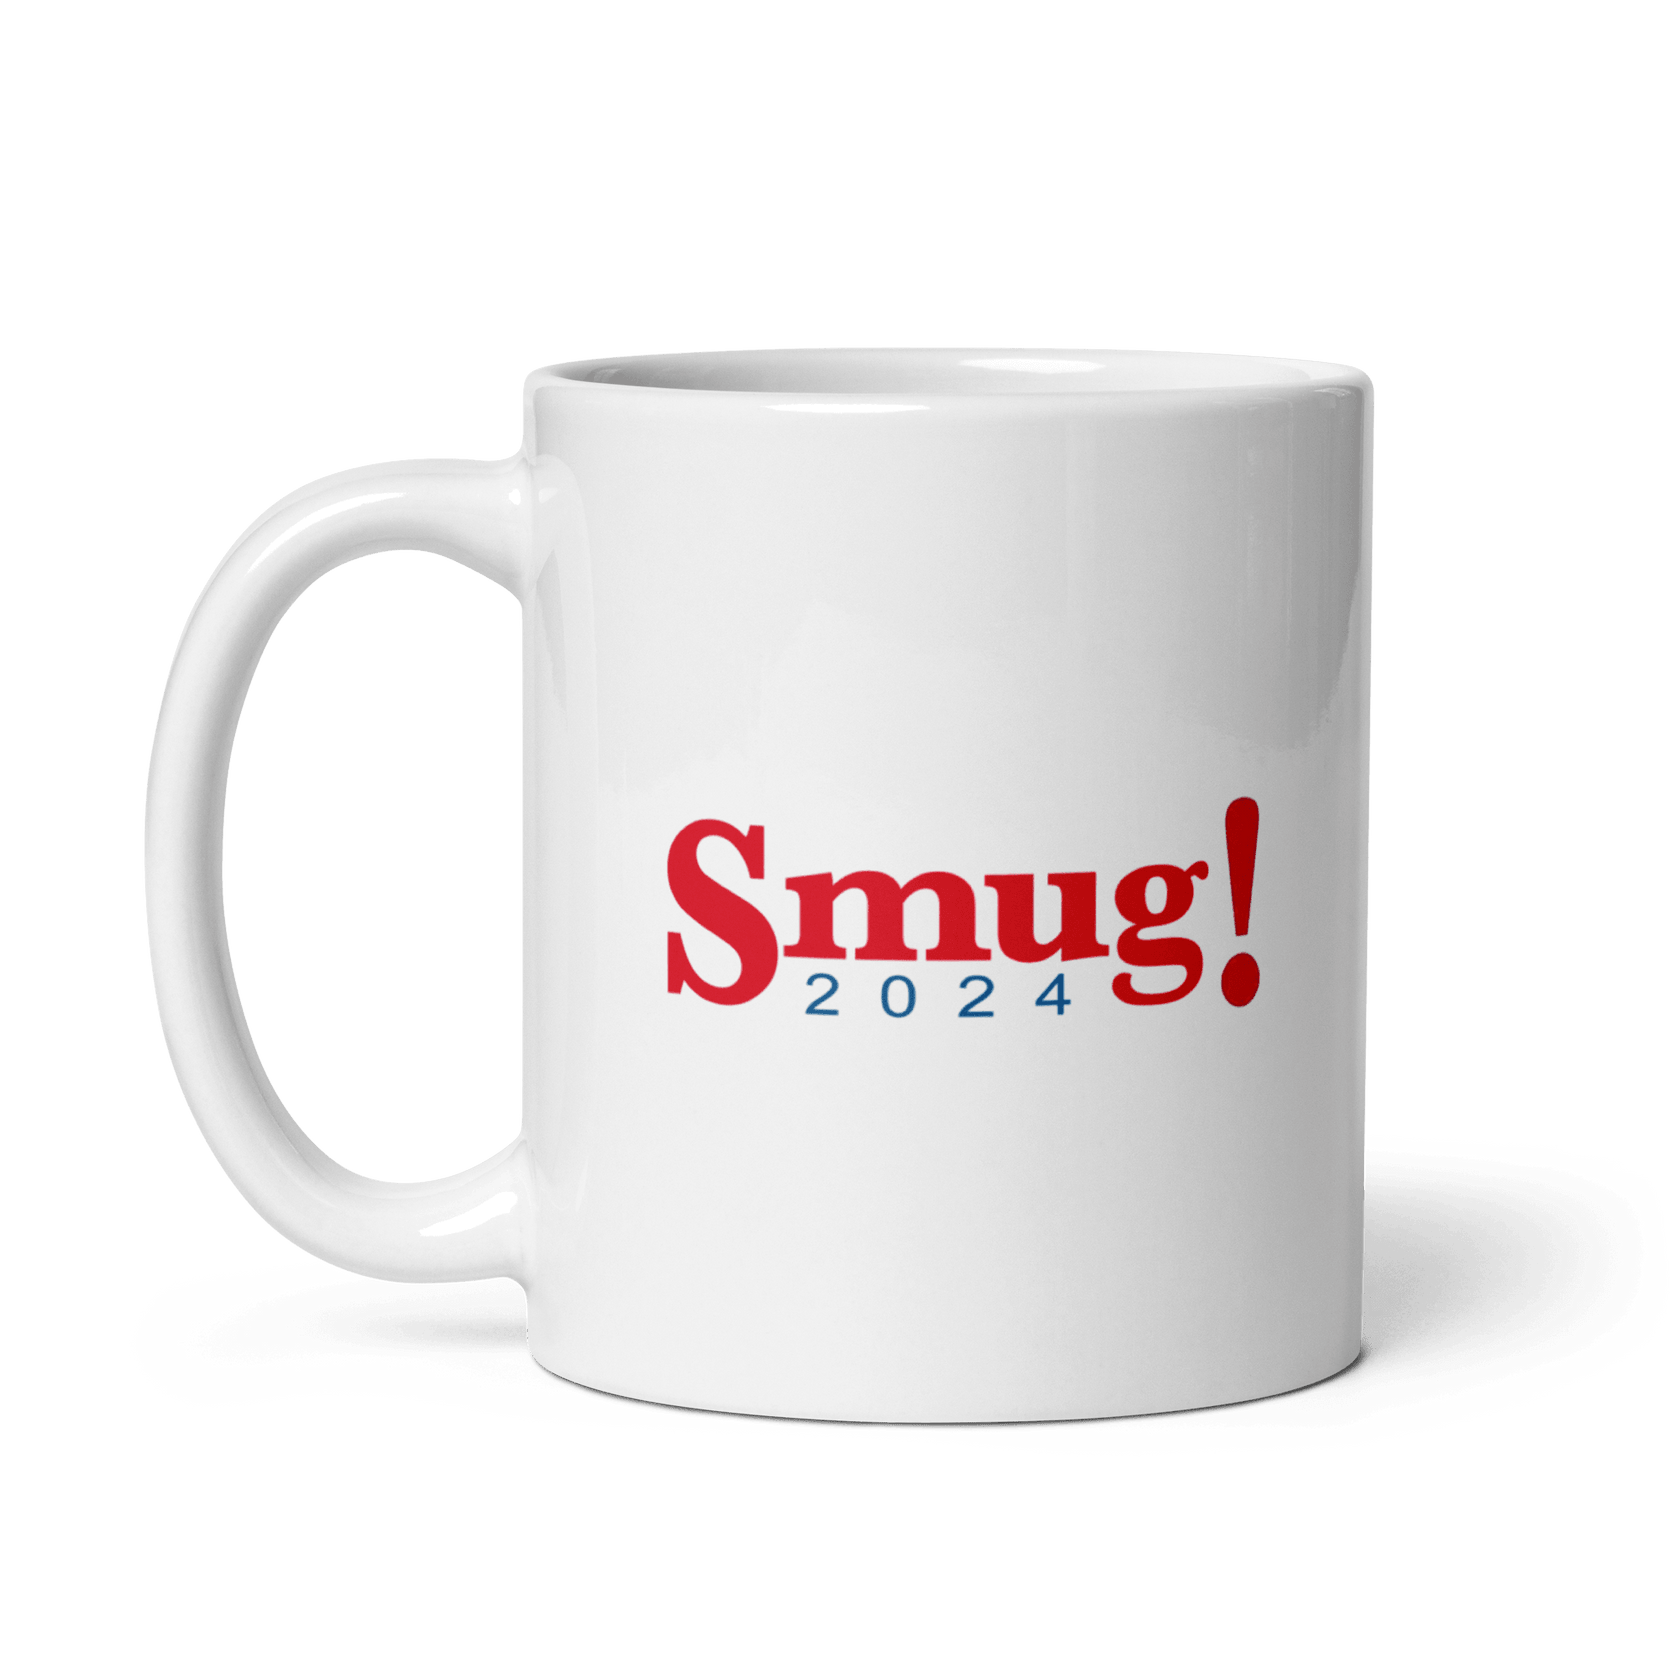 Smug! 2024 Mug Ruthless